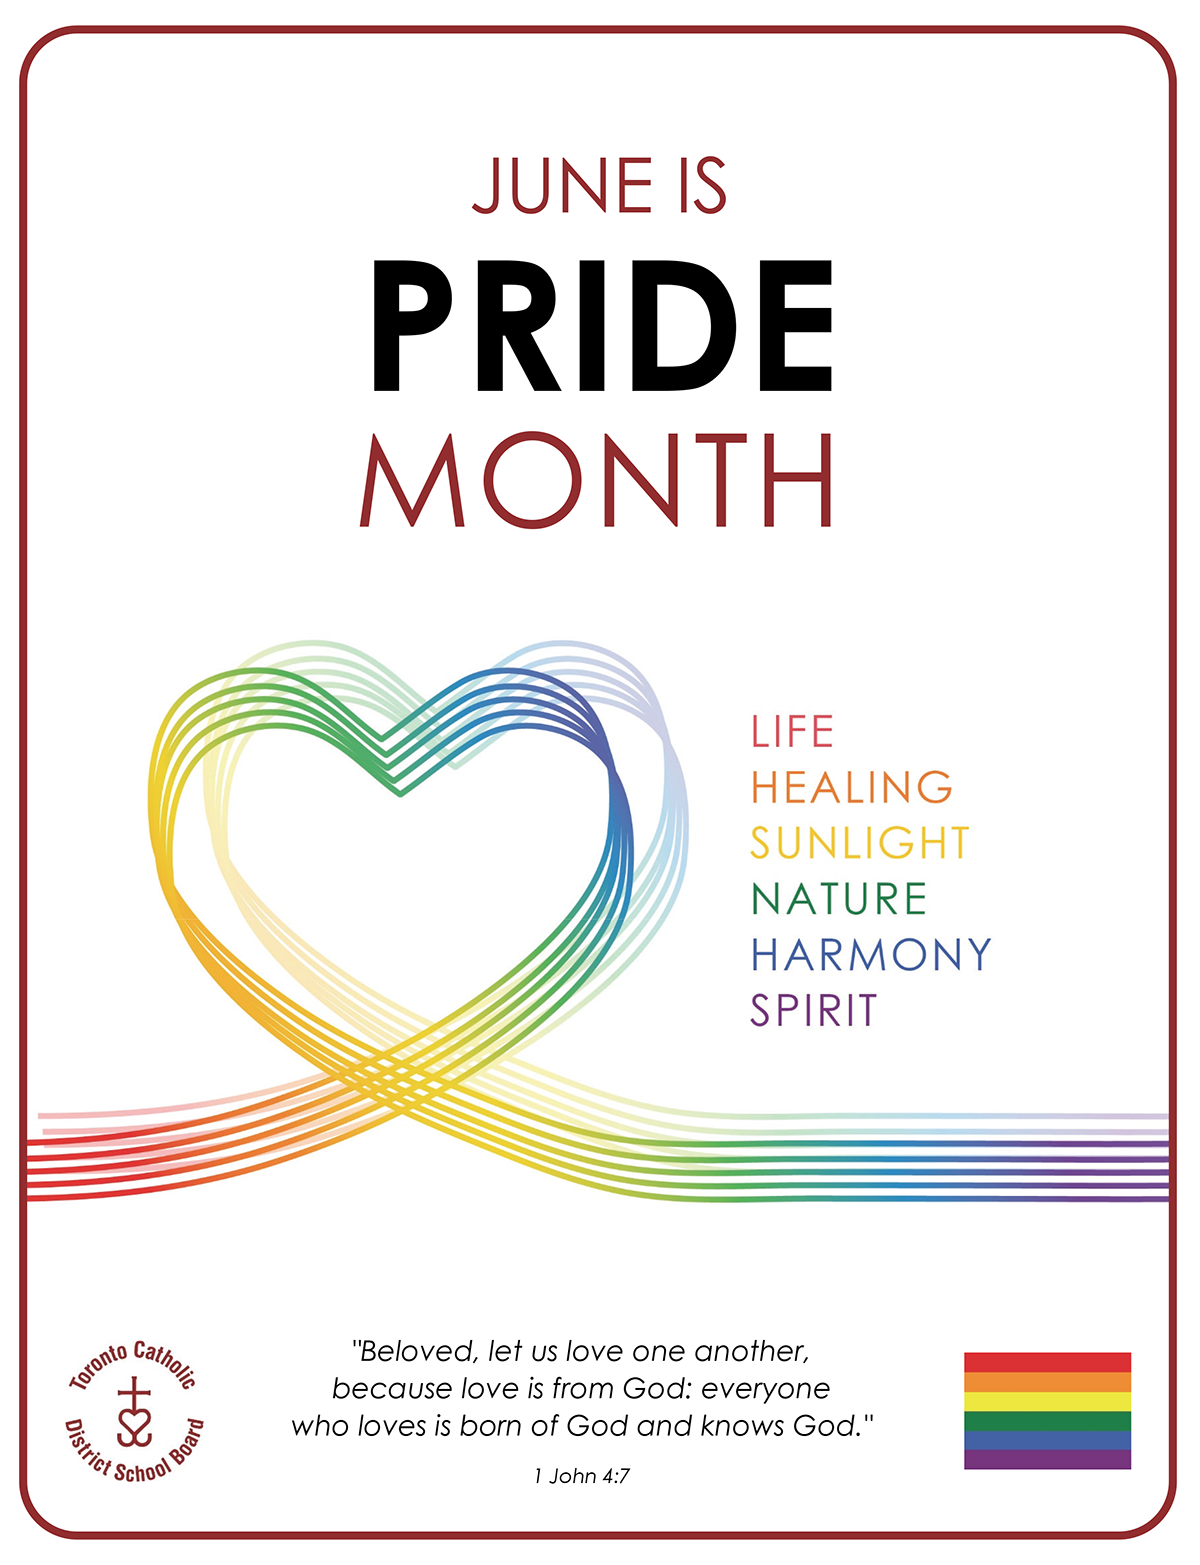 June is Pride Month flyer